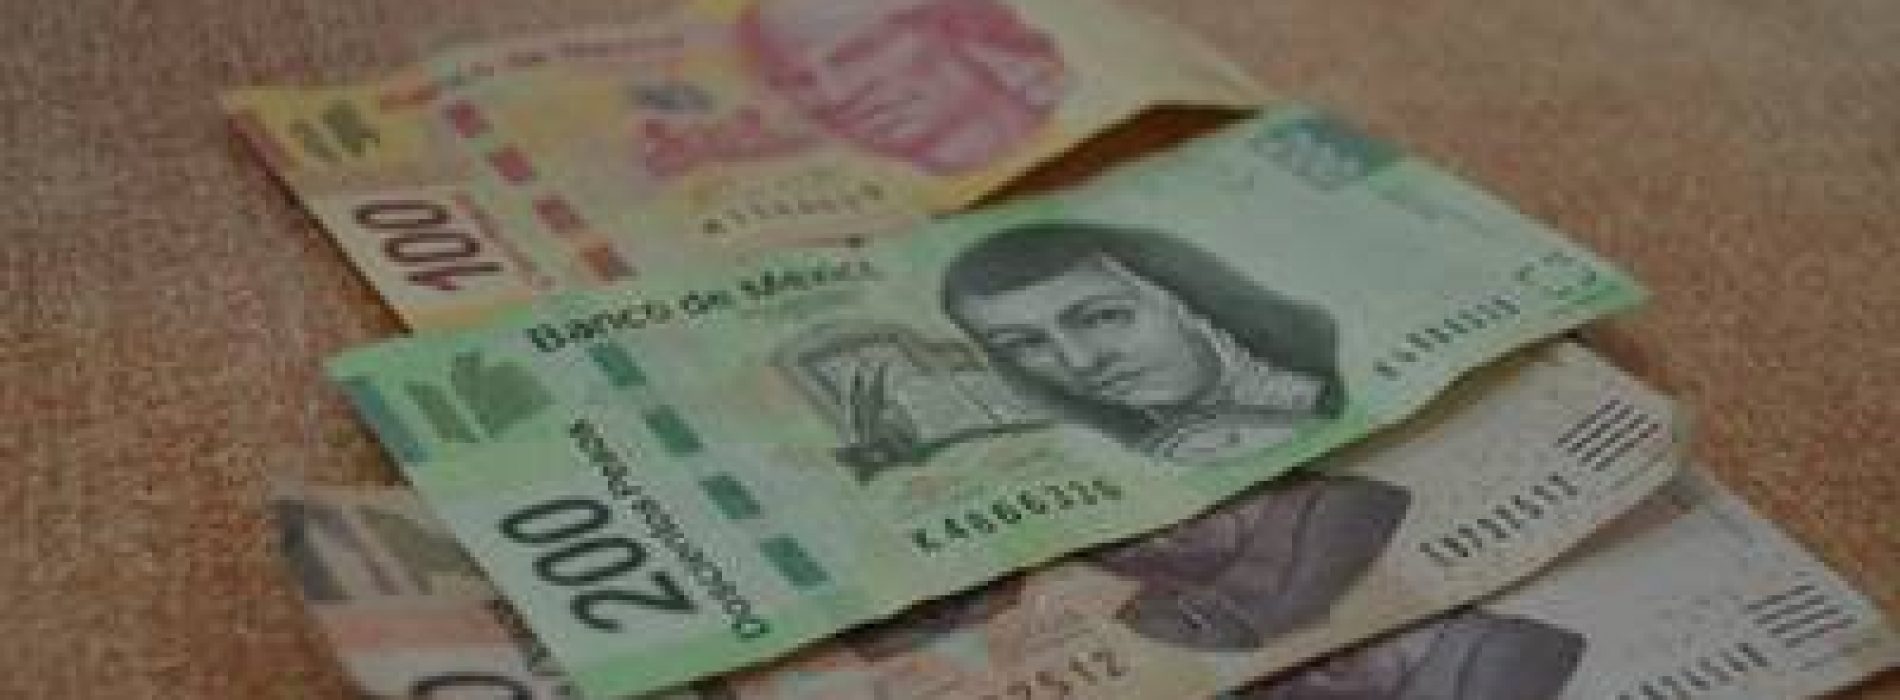 El gasto para ‘insignias’ de AMLO subirá 30% en el Presupuesto 2020